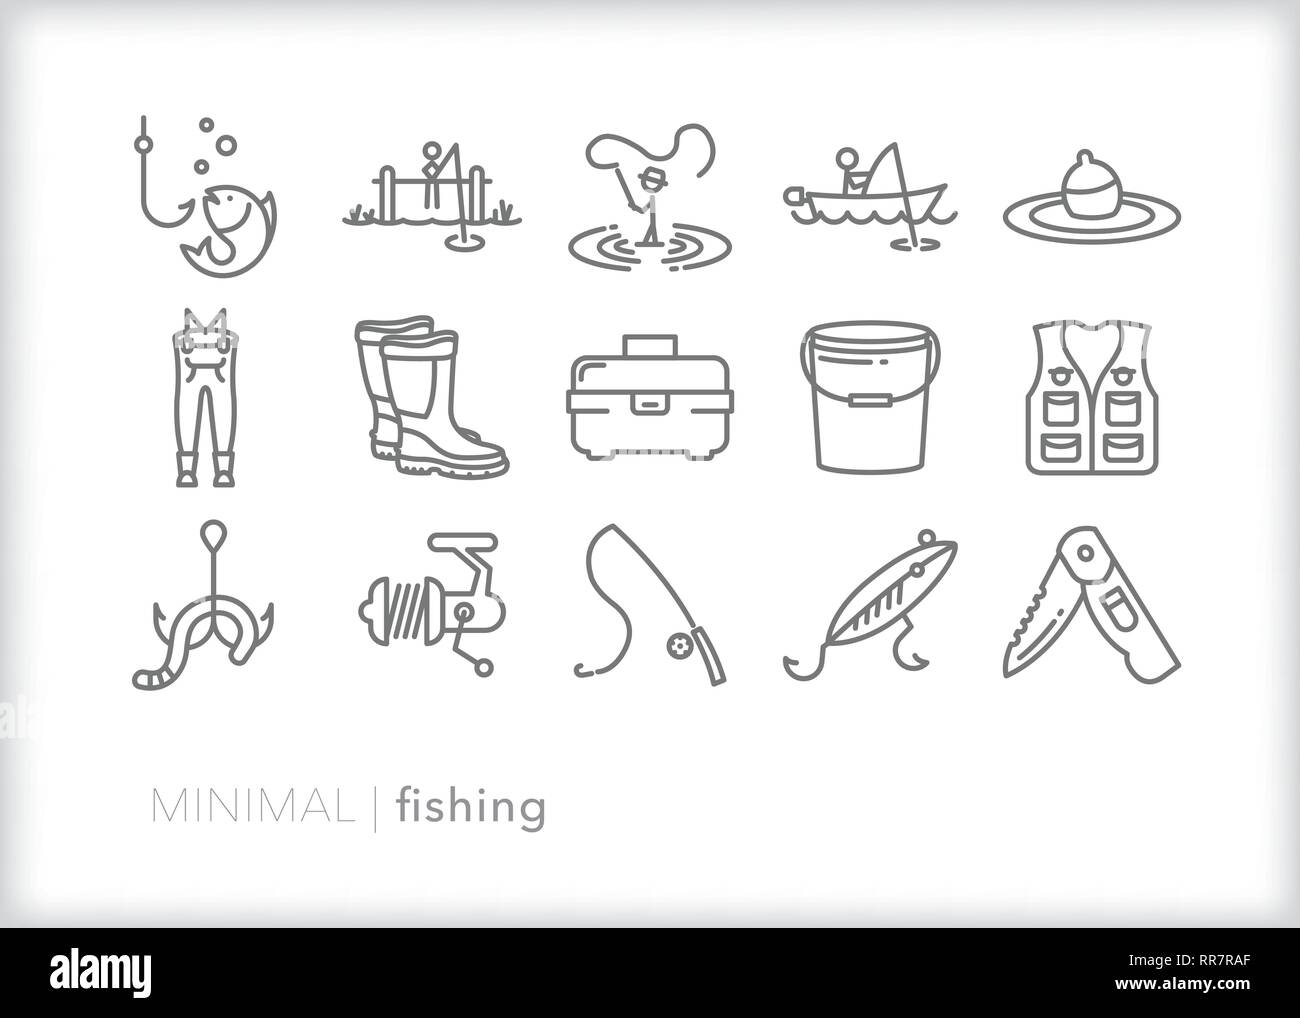 Ensemble de 15 icônes de ligne de pêche à des fins récréatives, passe-temps ou la pêche sportive Illustration de Vecteur